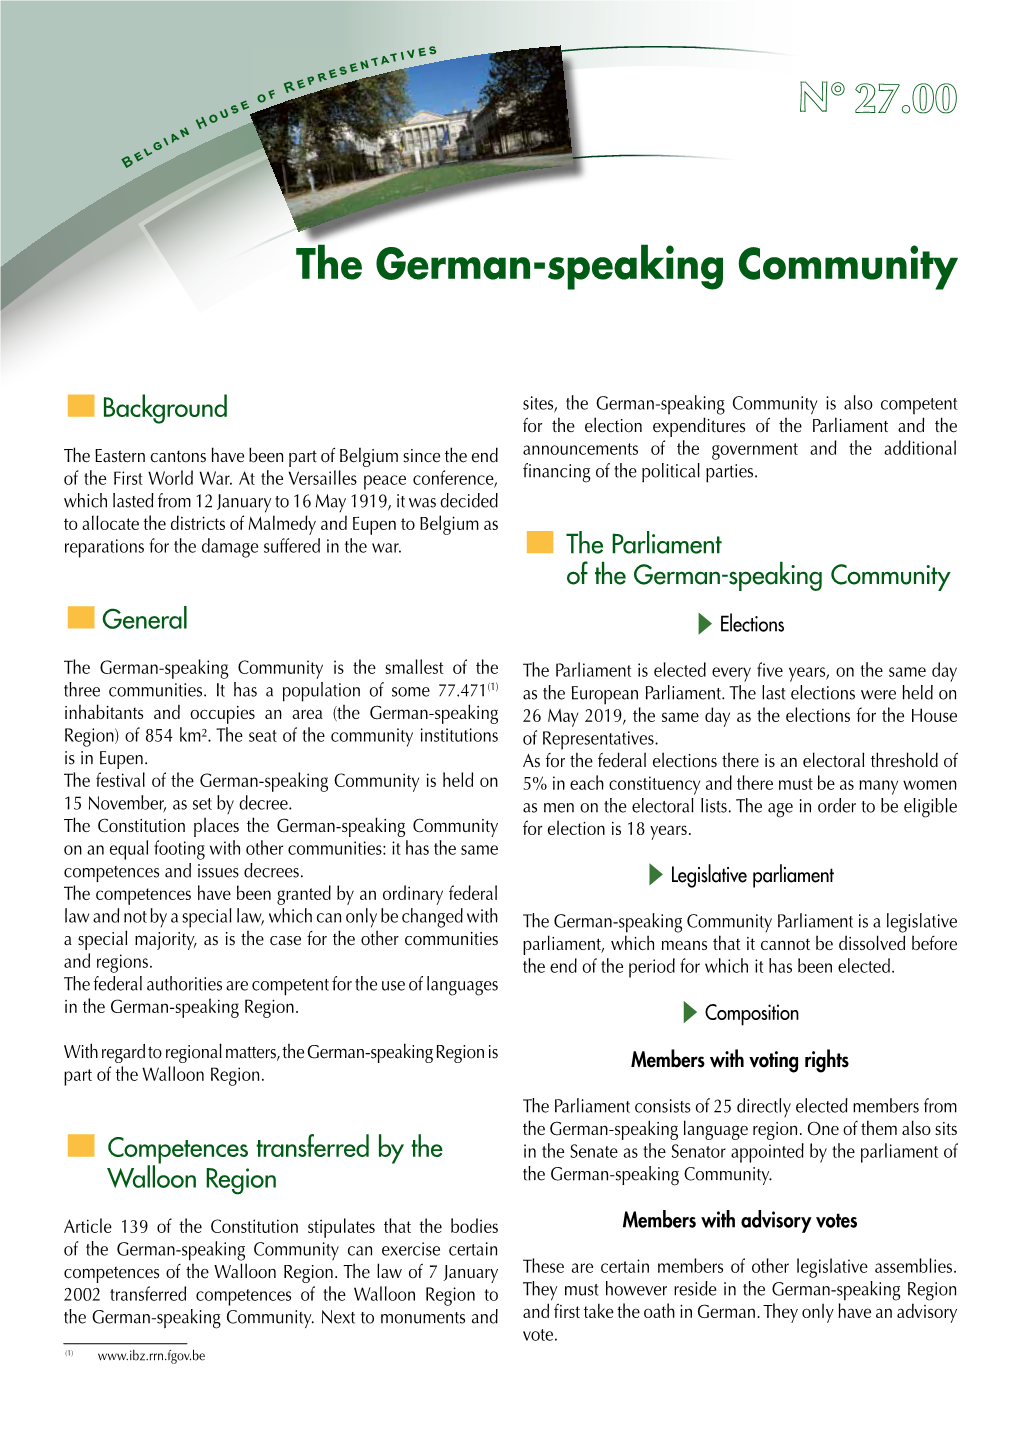 N° 27.00 the German-Speaking Community